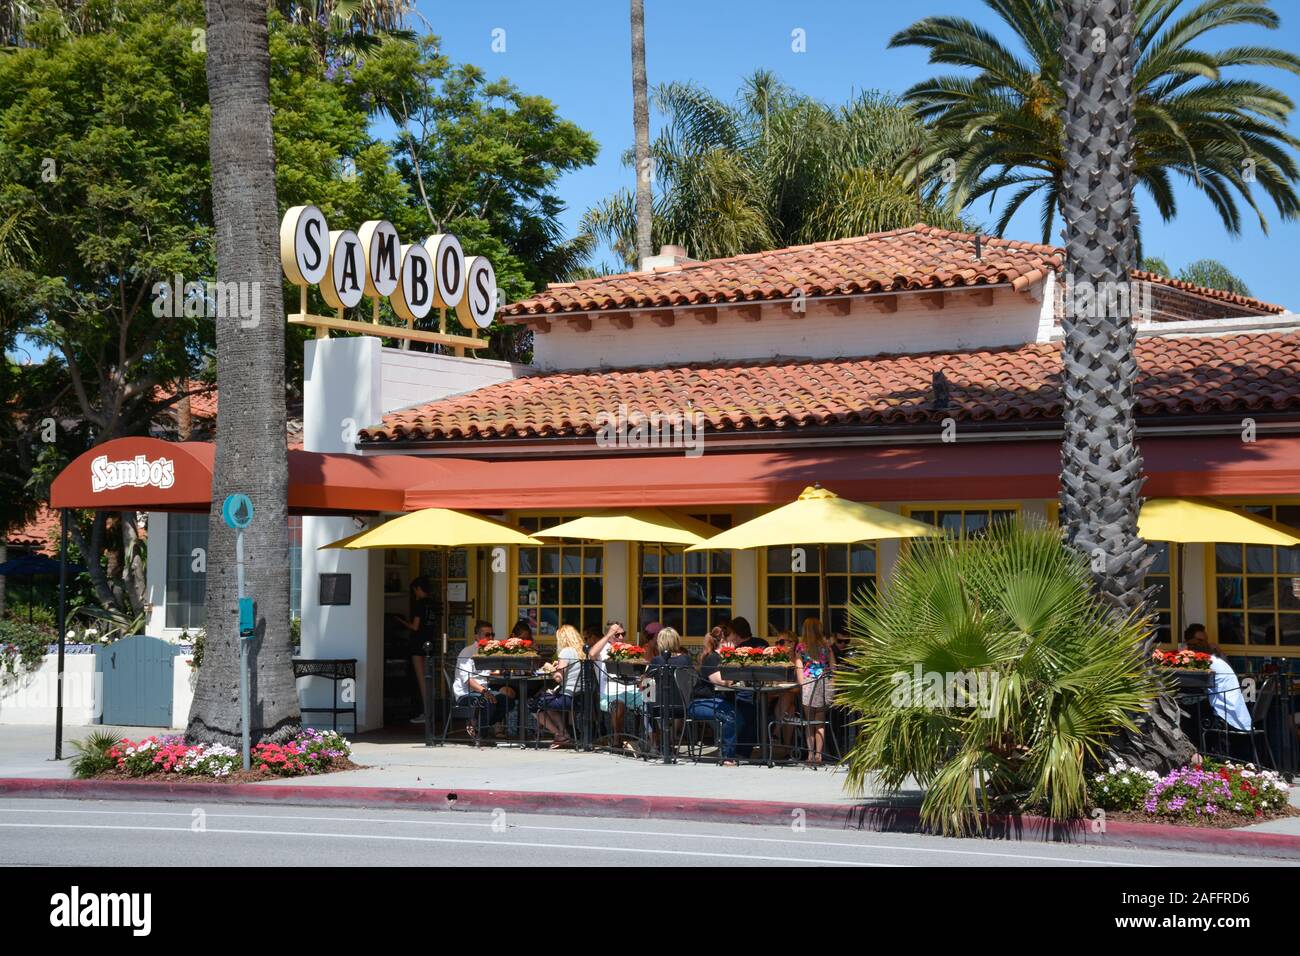 Les gens à manger sur la terrasse en Sambos restaurant, le dernier de la chaîne de restaurants Sambos à rester en affaires, situé à Santa Barbara, CA, USA Banque D'Images